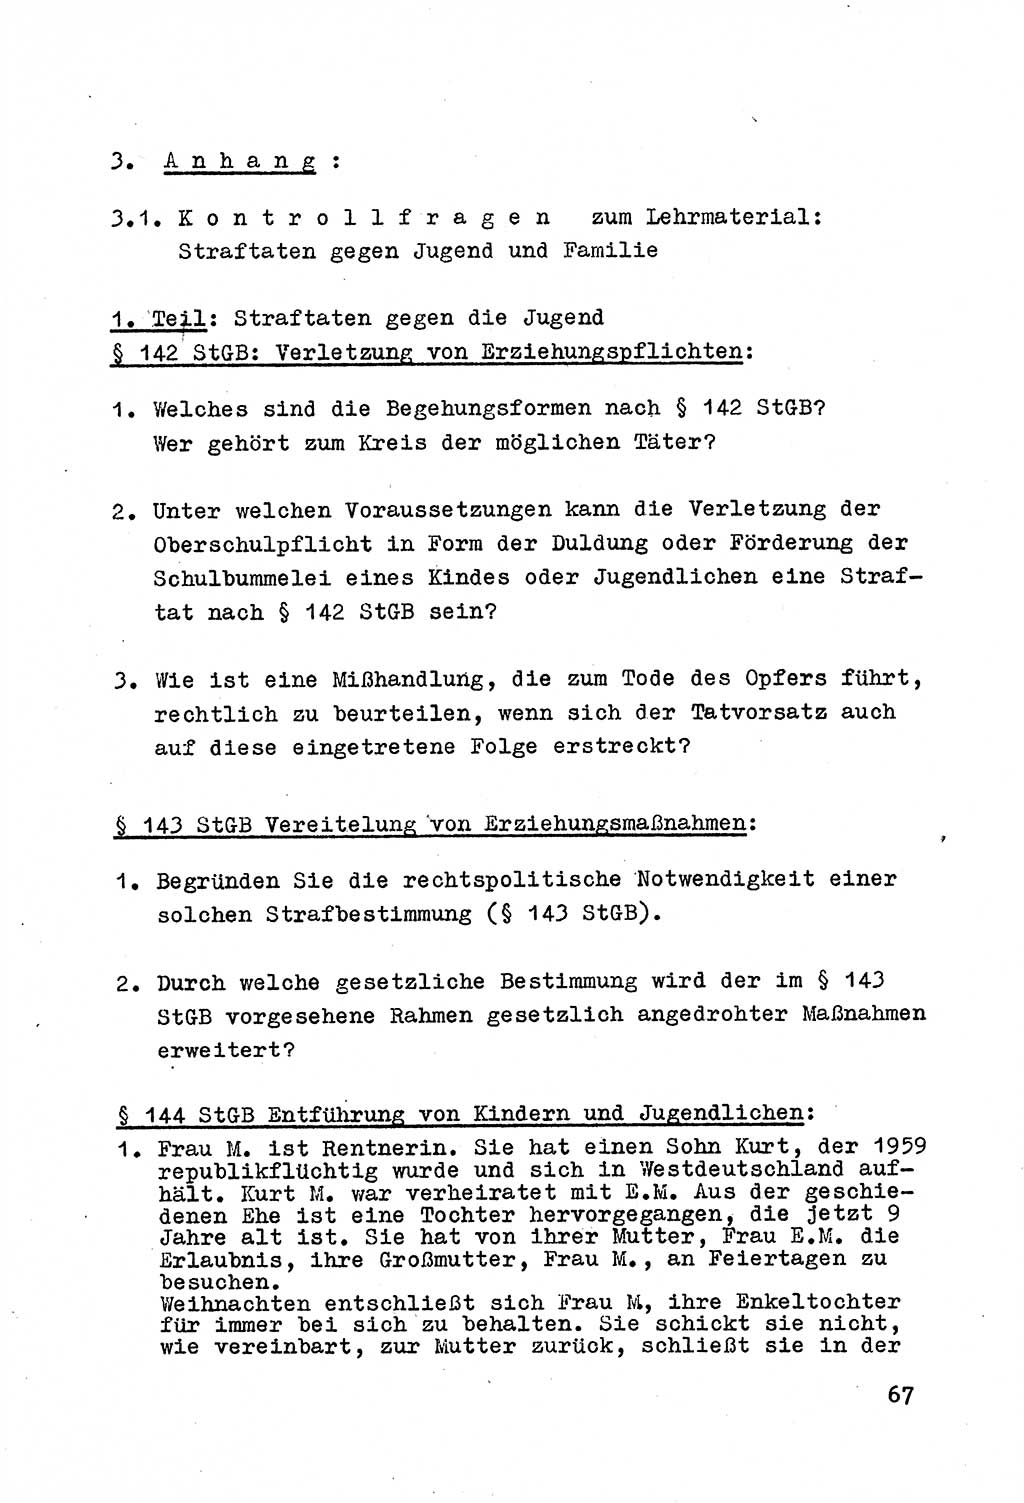 Strafrecht der DDR (Deutsche Demokratische Republik), Besonderer Teil, Lehrmaterial, Heft 4 1969, Seite 67 (Strafr. DDR BT Lehrmat. H. 4 1969, S. 67)